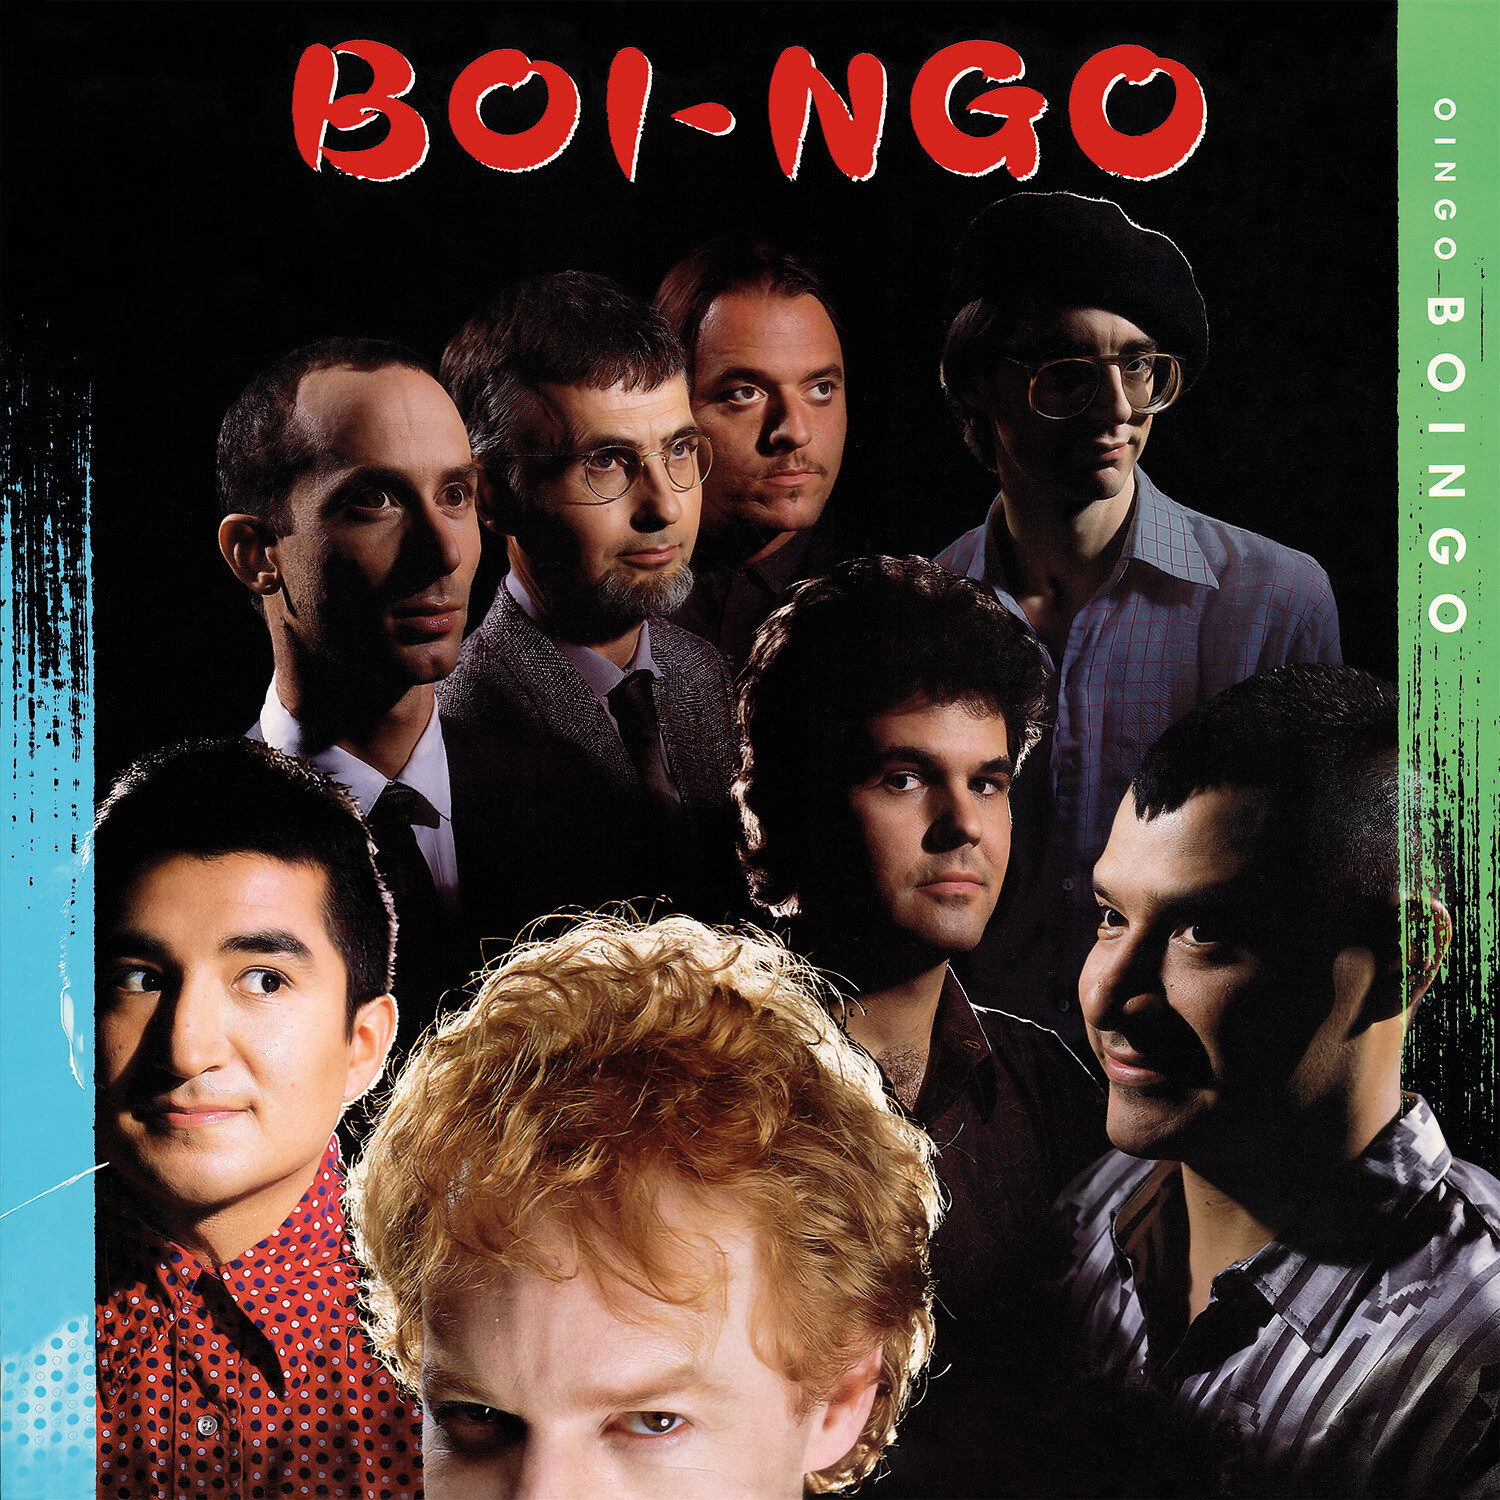 Oingo Boingo - Boi-Ngo CD (2022 Remastered & Expanded Edition)